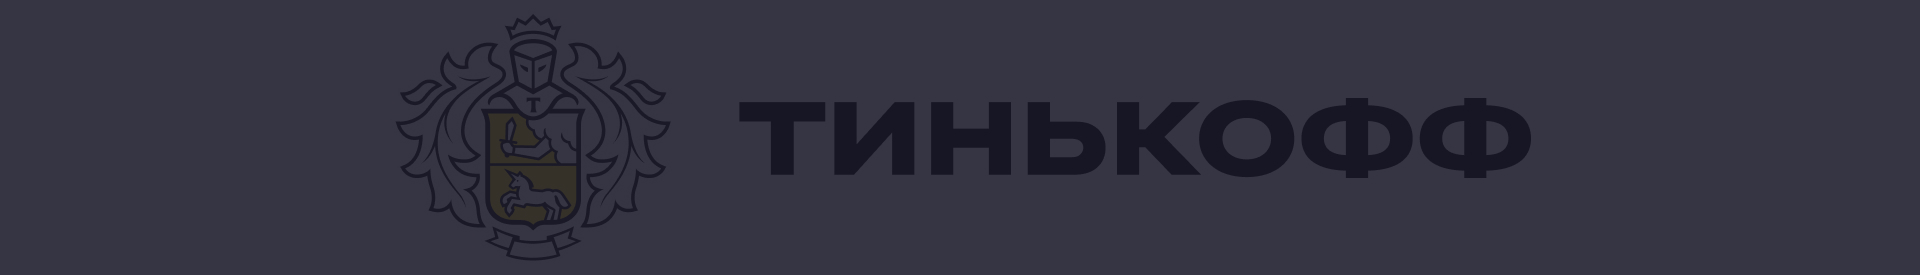 Акции и спецпредложения в банке Тинькофф в Санкт-Петербурге